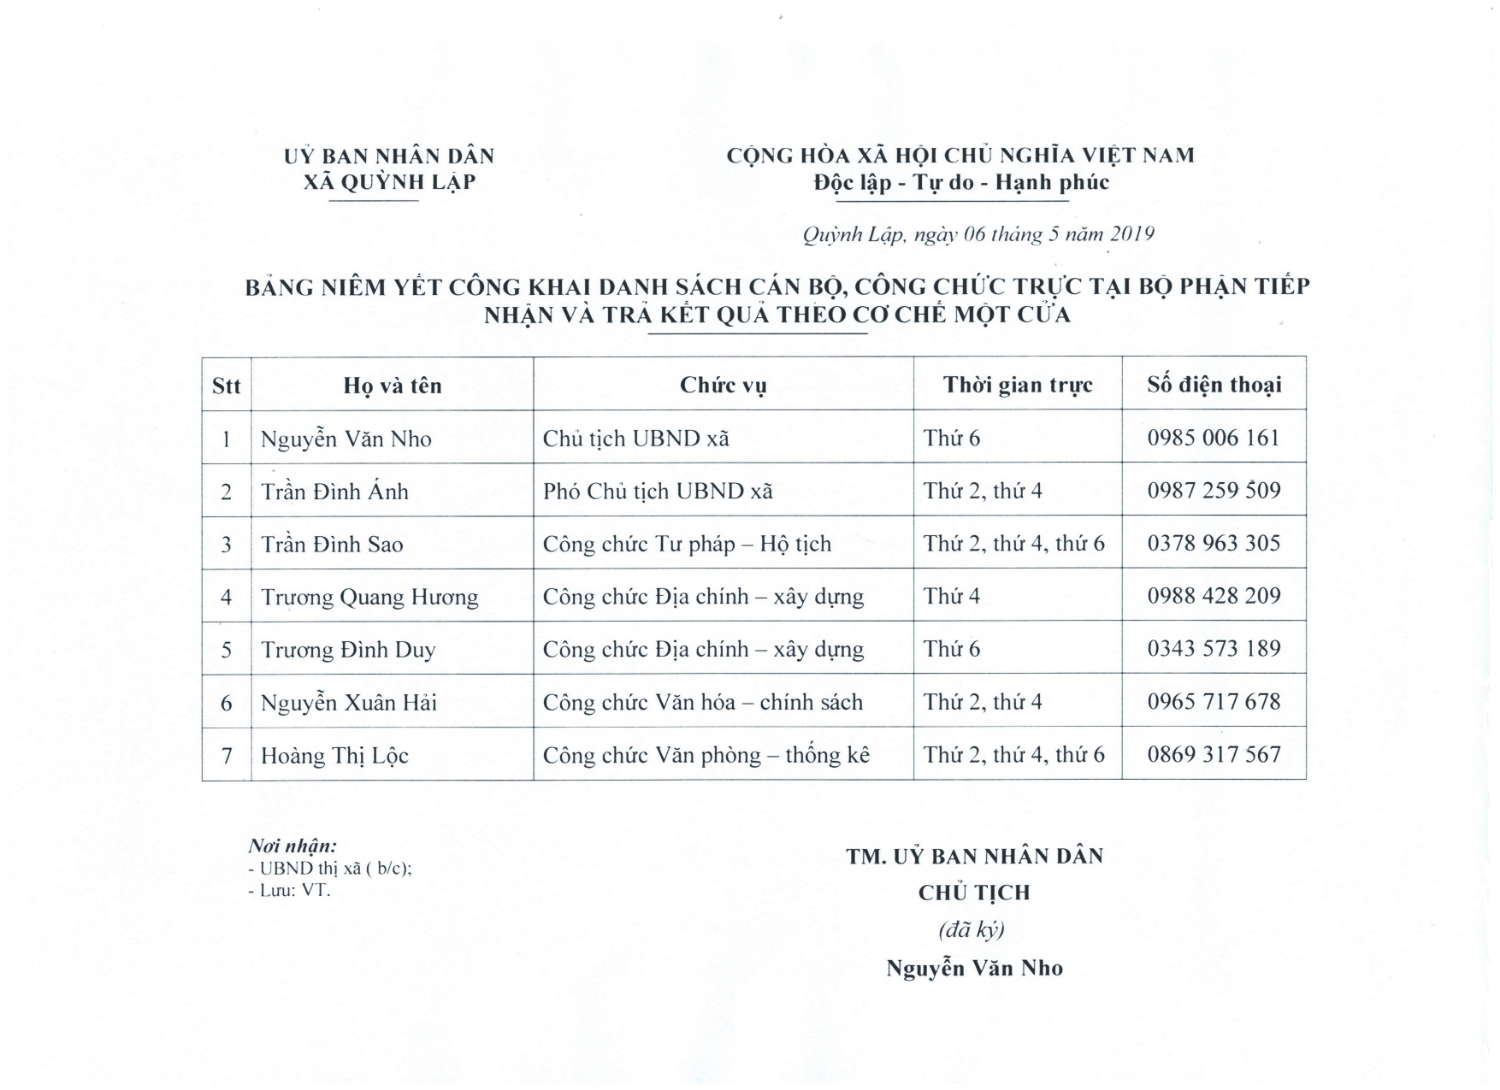 Danh sách cán bộ và thời gian trực tại bộ phận "một cửa" UBND xã Quỳnh Lập